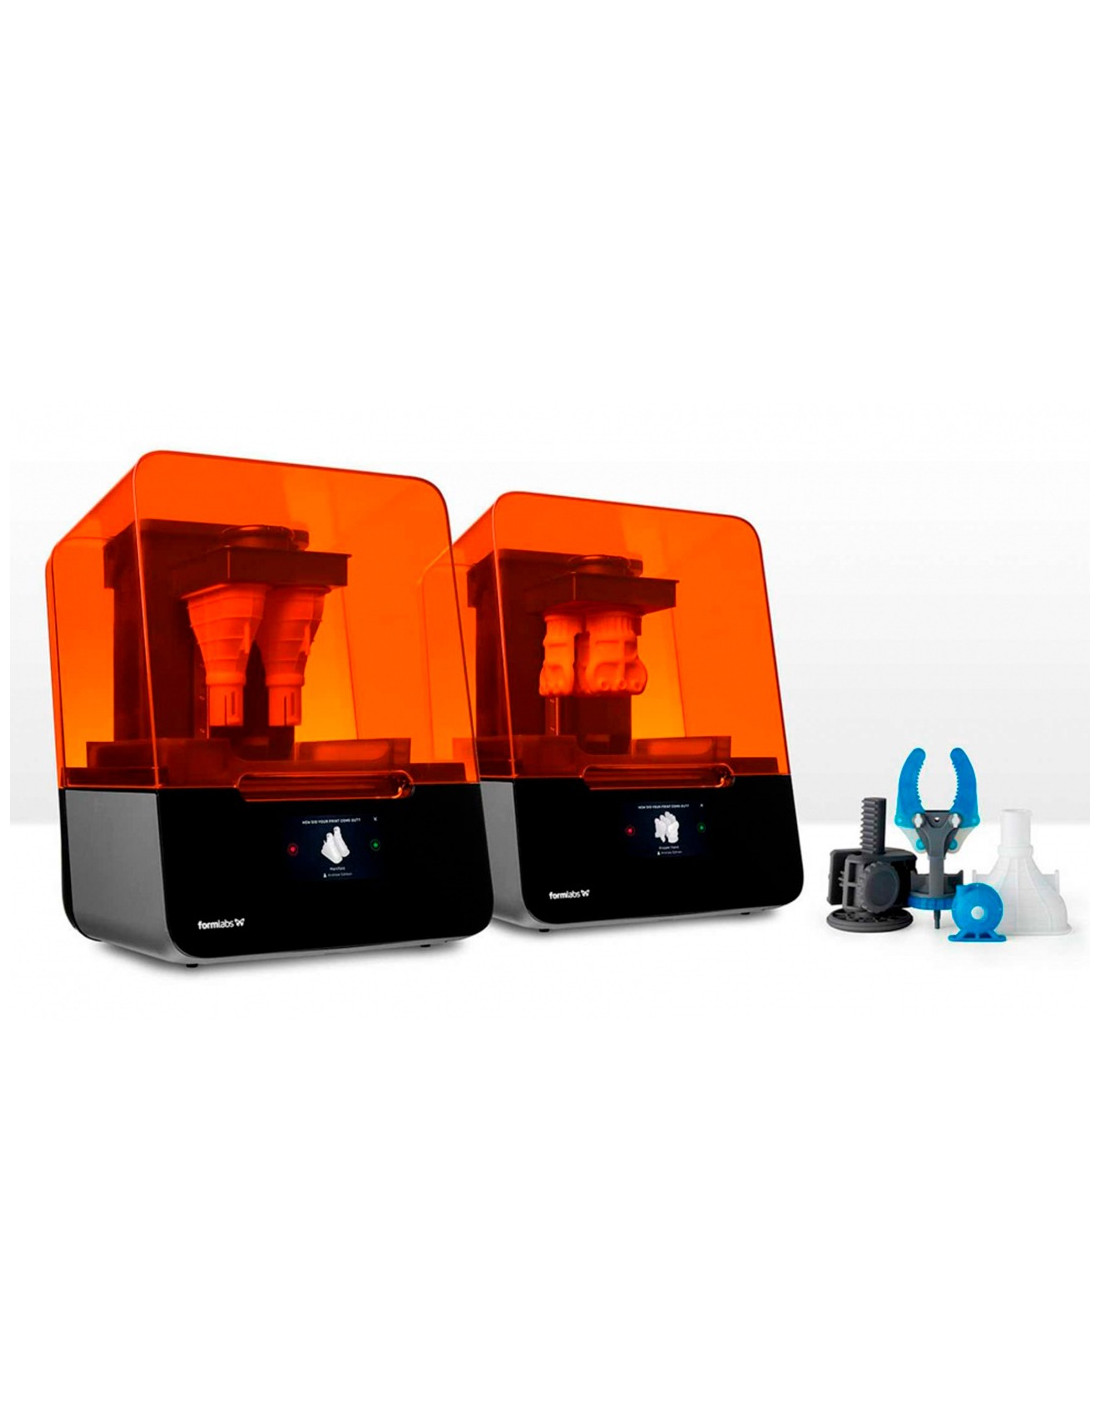 Impresora 3D FormLabs Form 3 - paquete básico